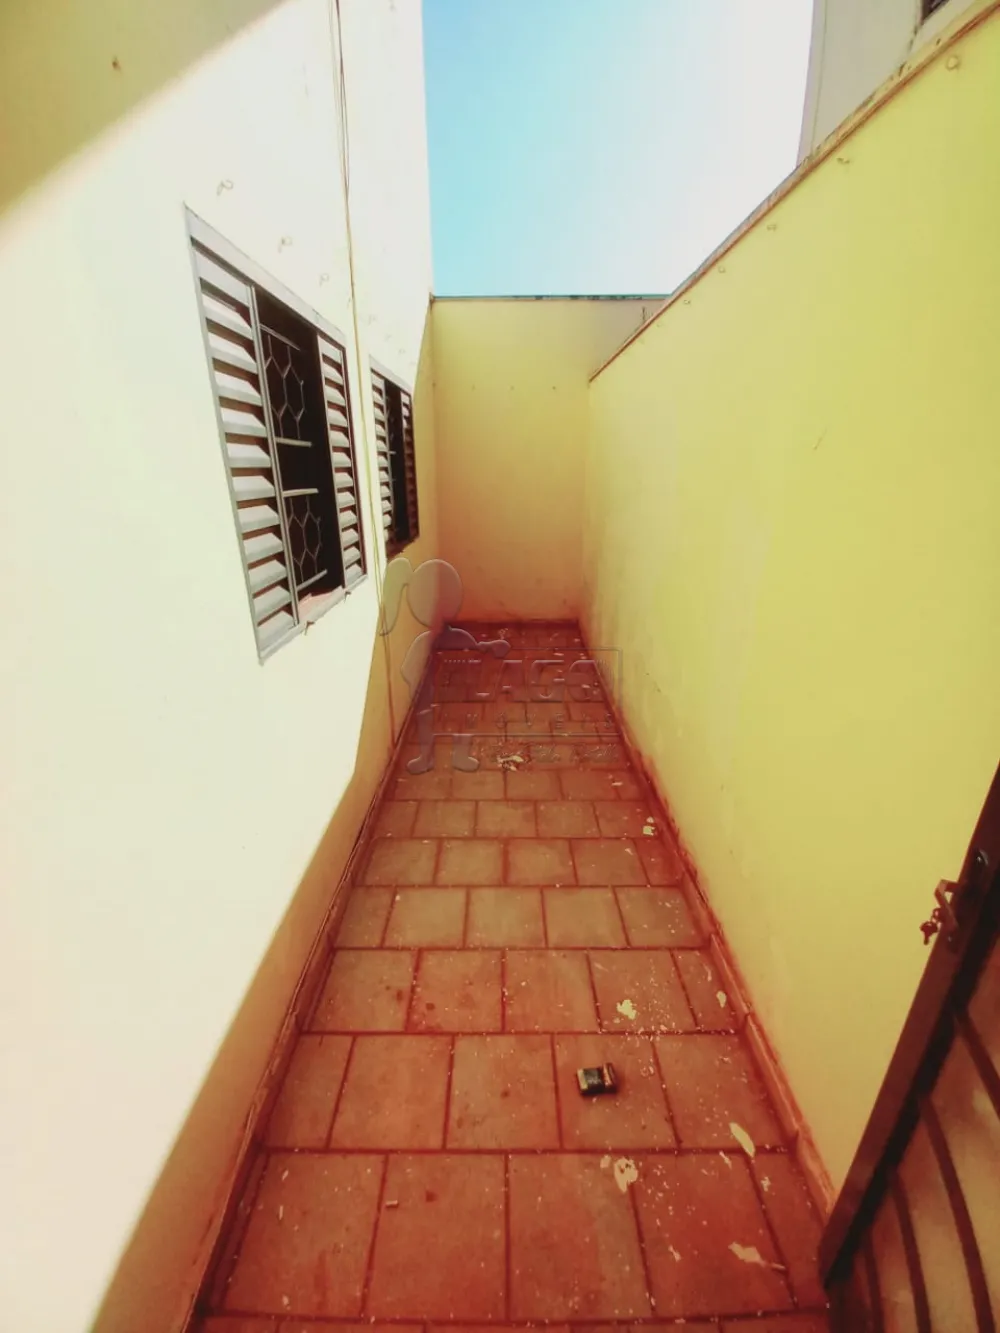 Alugar Apartamentos / Padrão em Ribeirão Preto R$ 1.000,00 - Foto 16